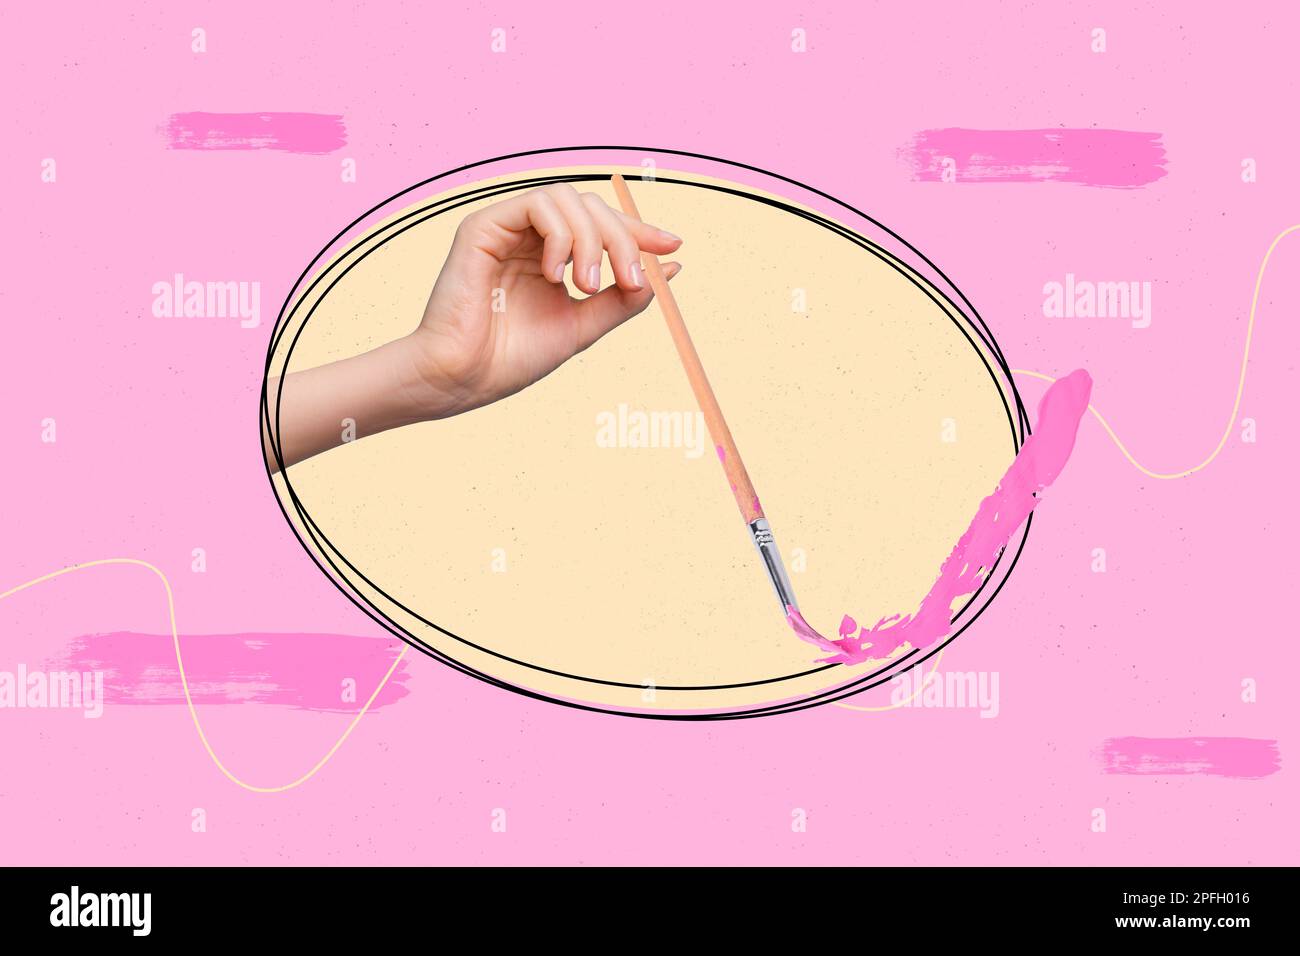 Photo bannière collage conceptuel de la créativité pinceau dessin rose couleurs passe-temps chef-d'œuvre illustration image isolée sur fond peint Banque D'Images